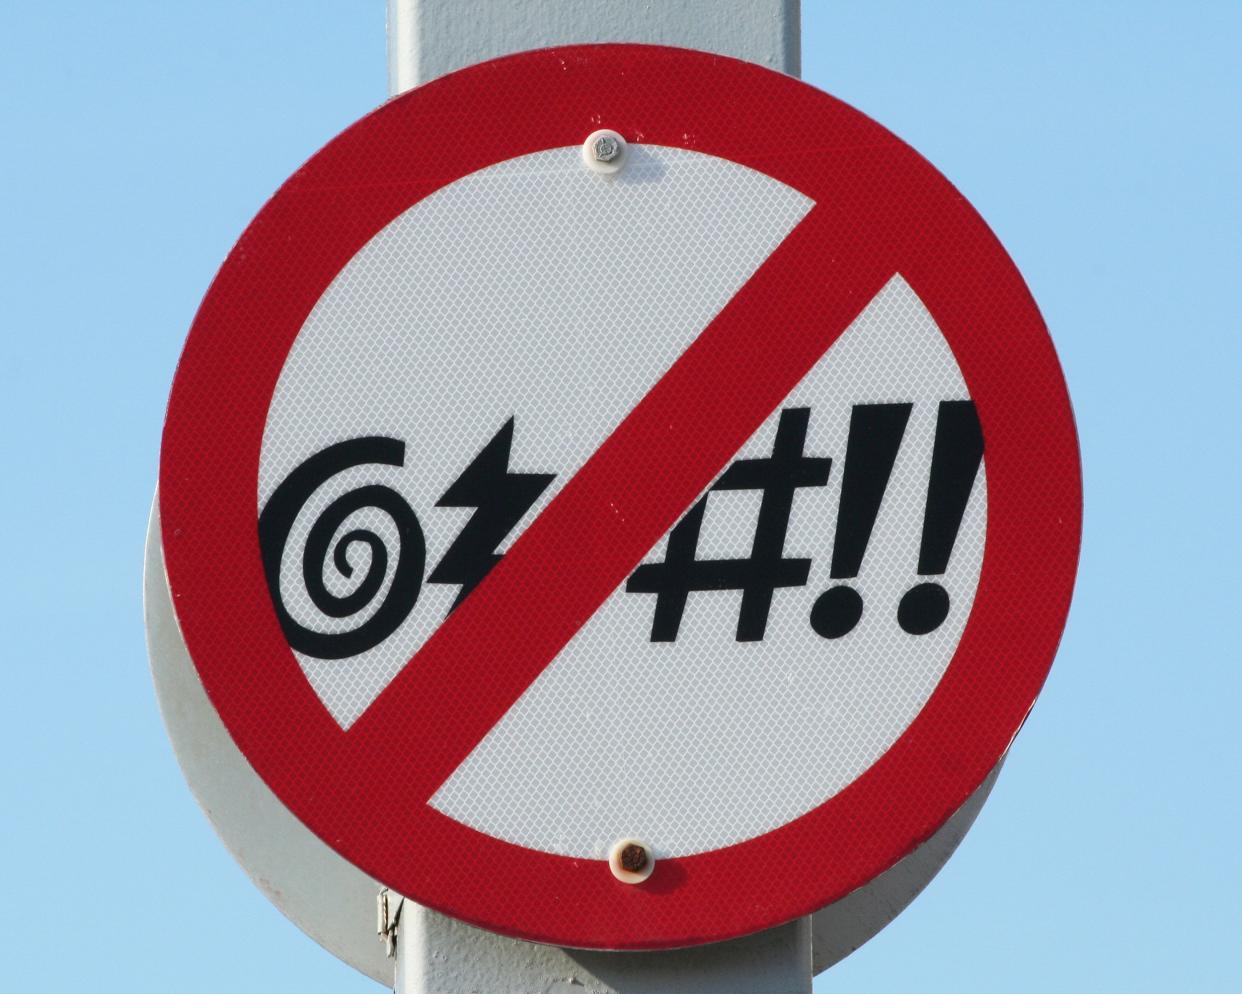 'No Profanity' sign